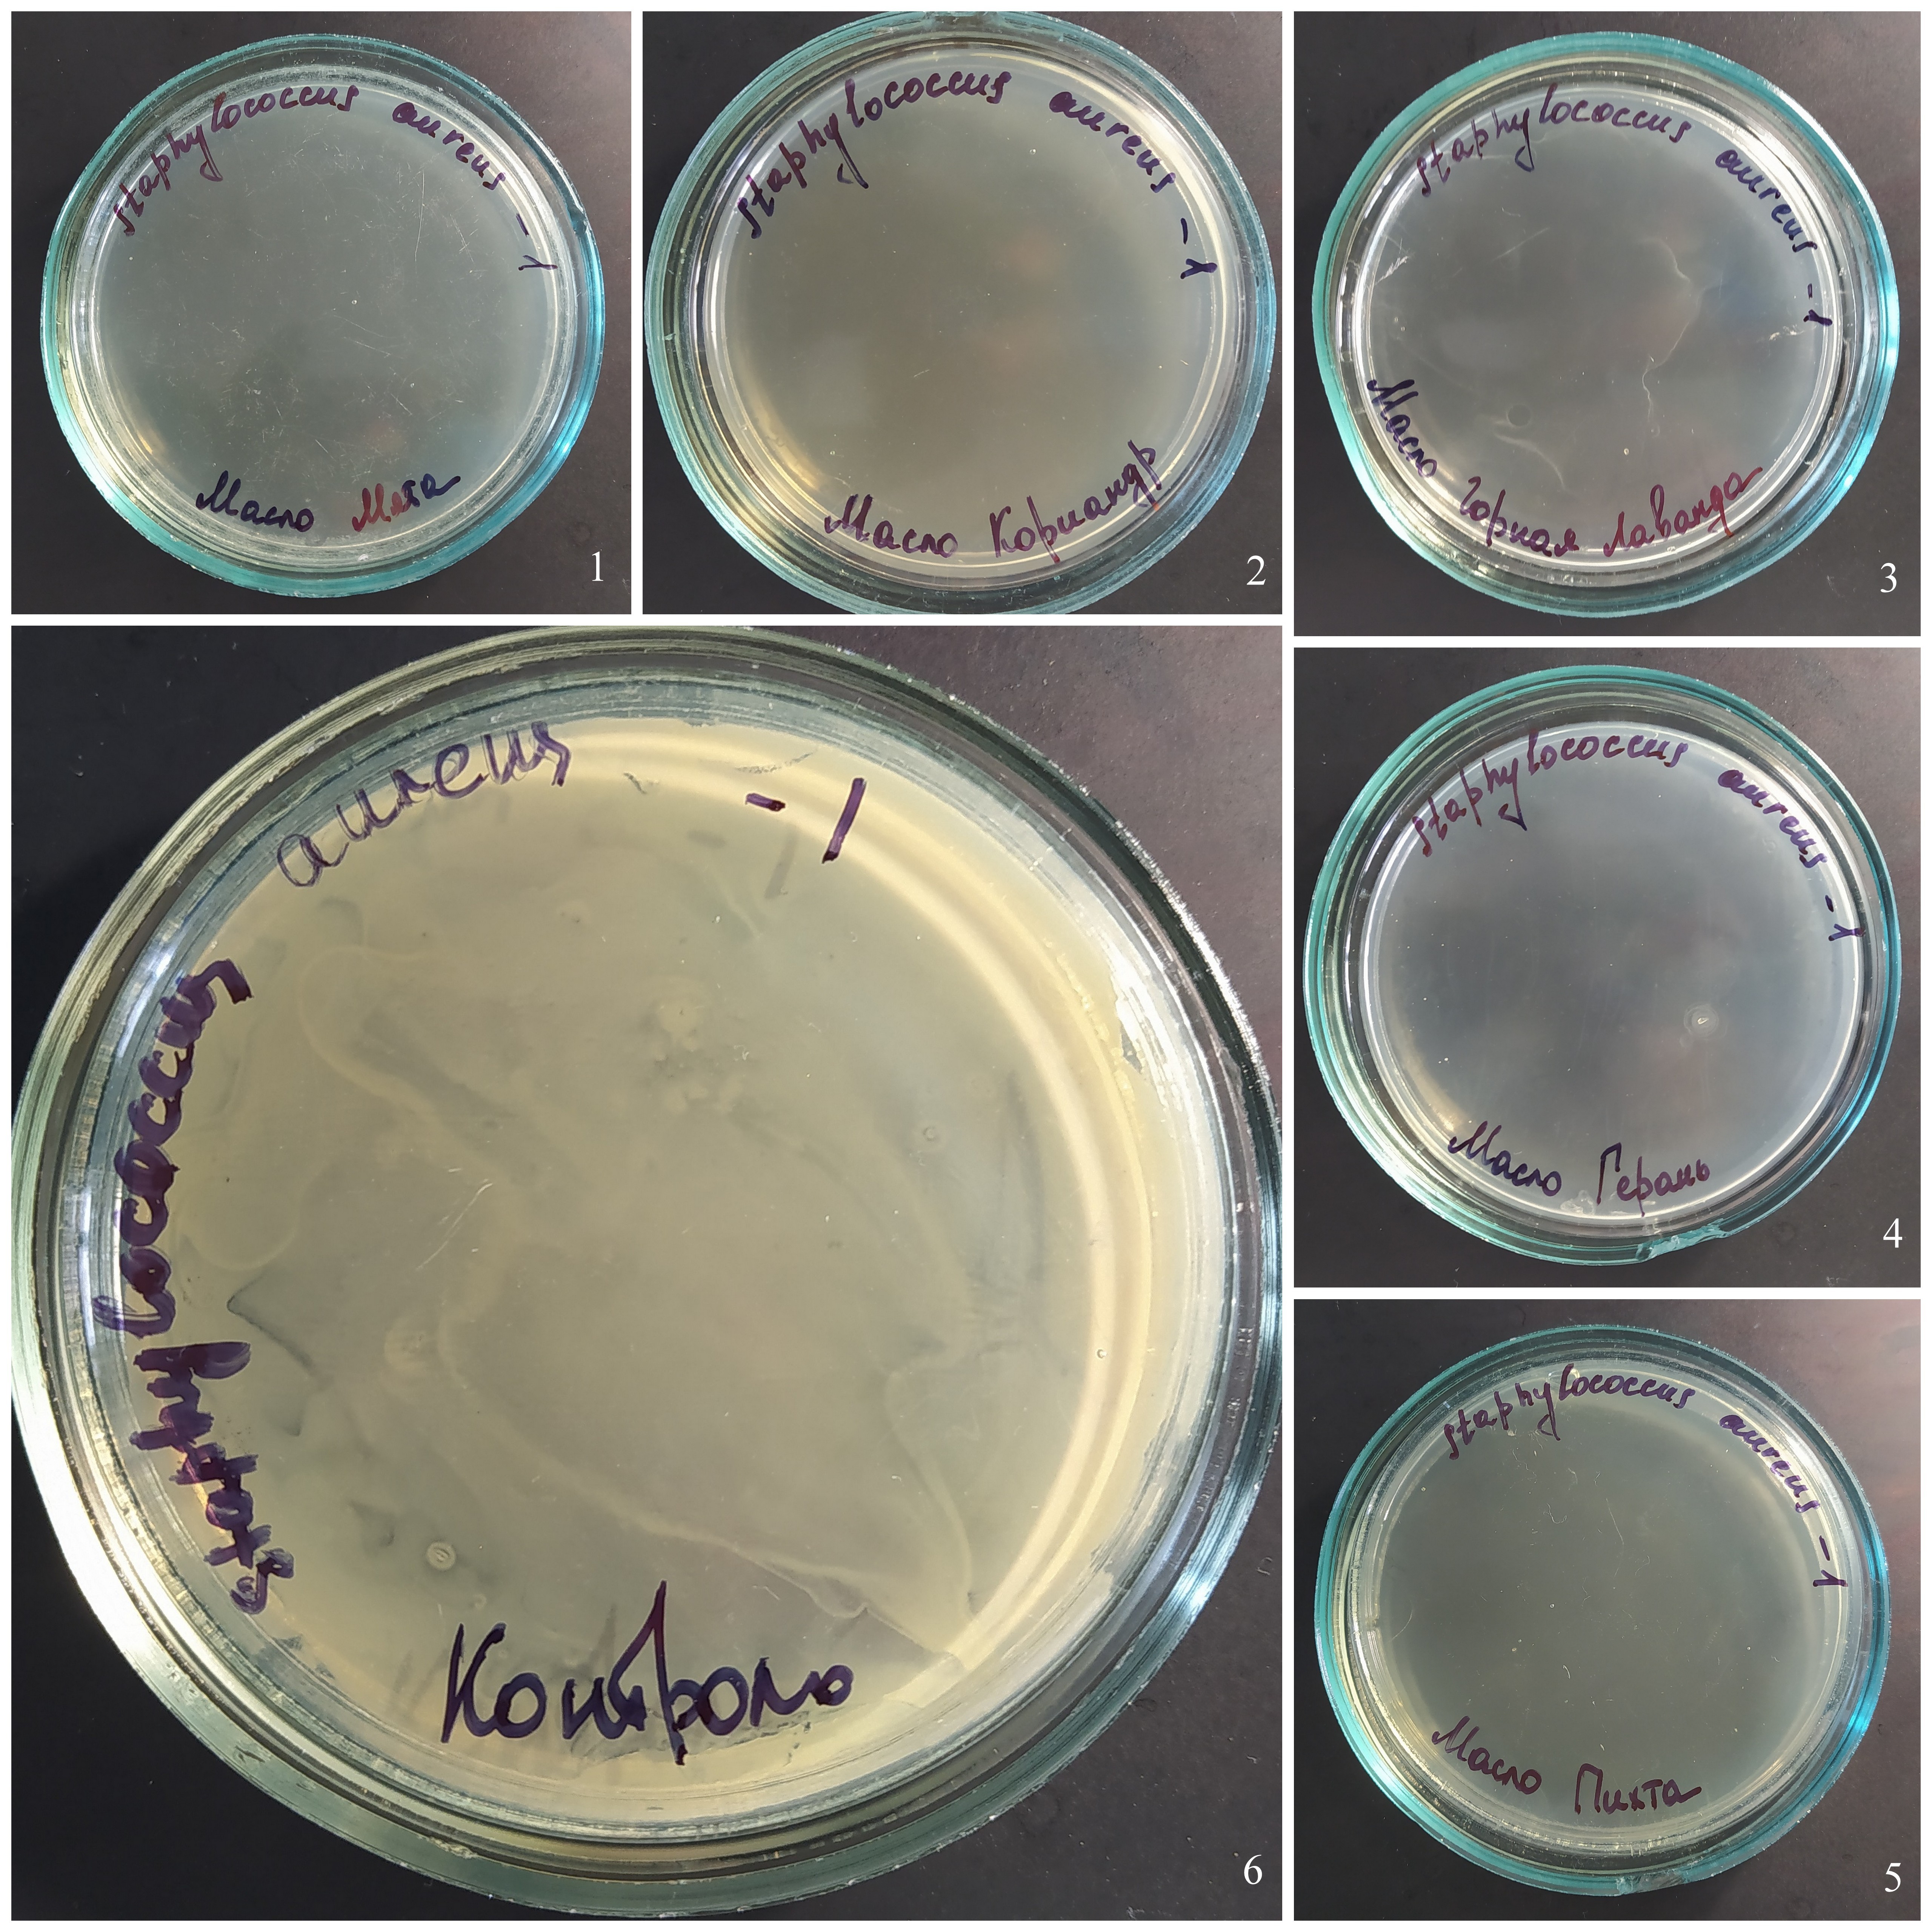 Действие паров эфирных масел на рост Staphylococcus aureus (разведение 10-1)